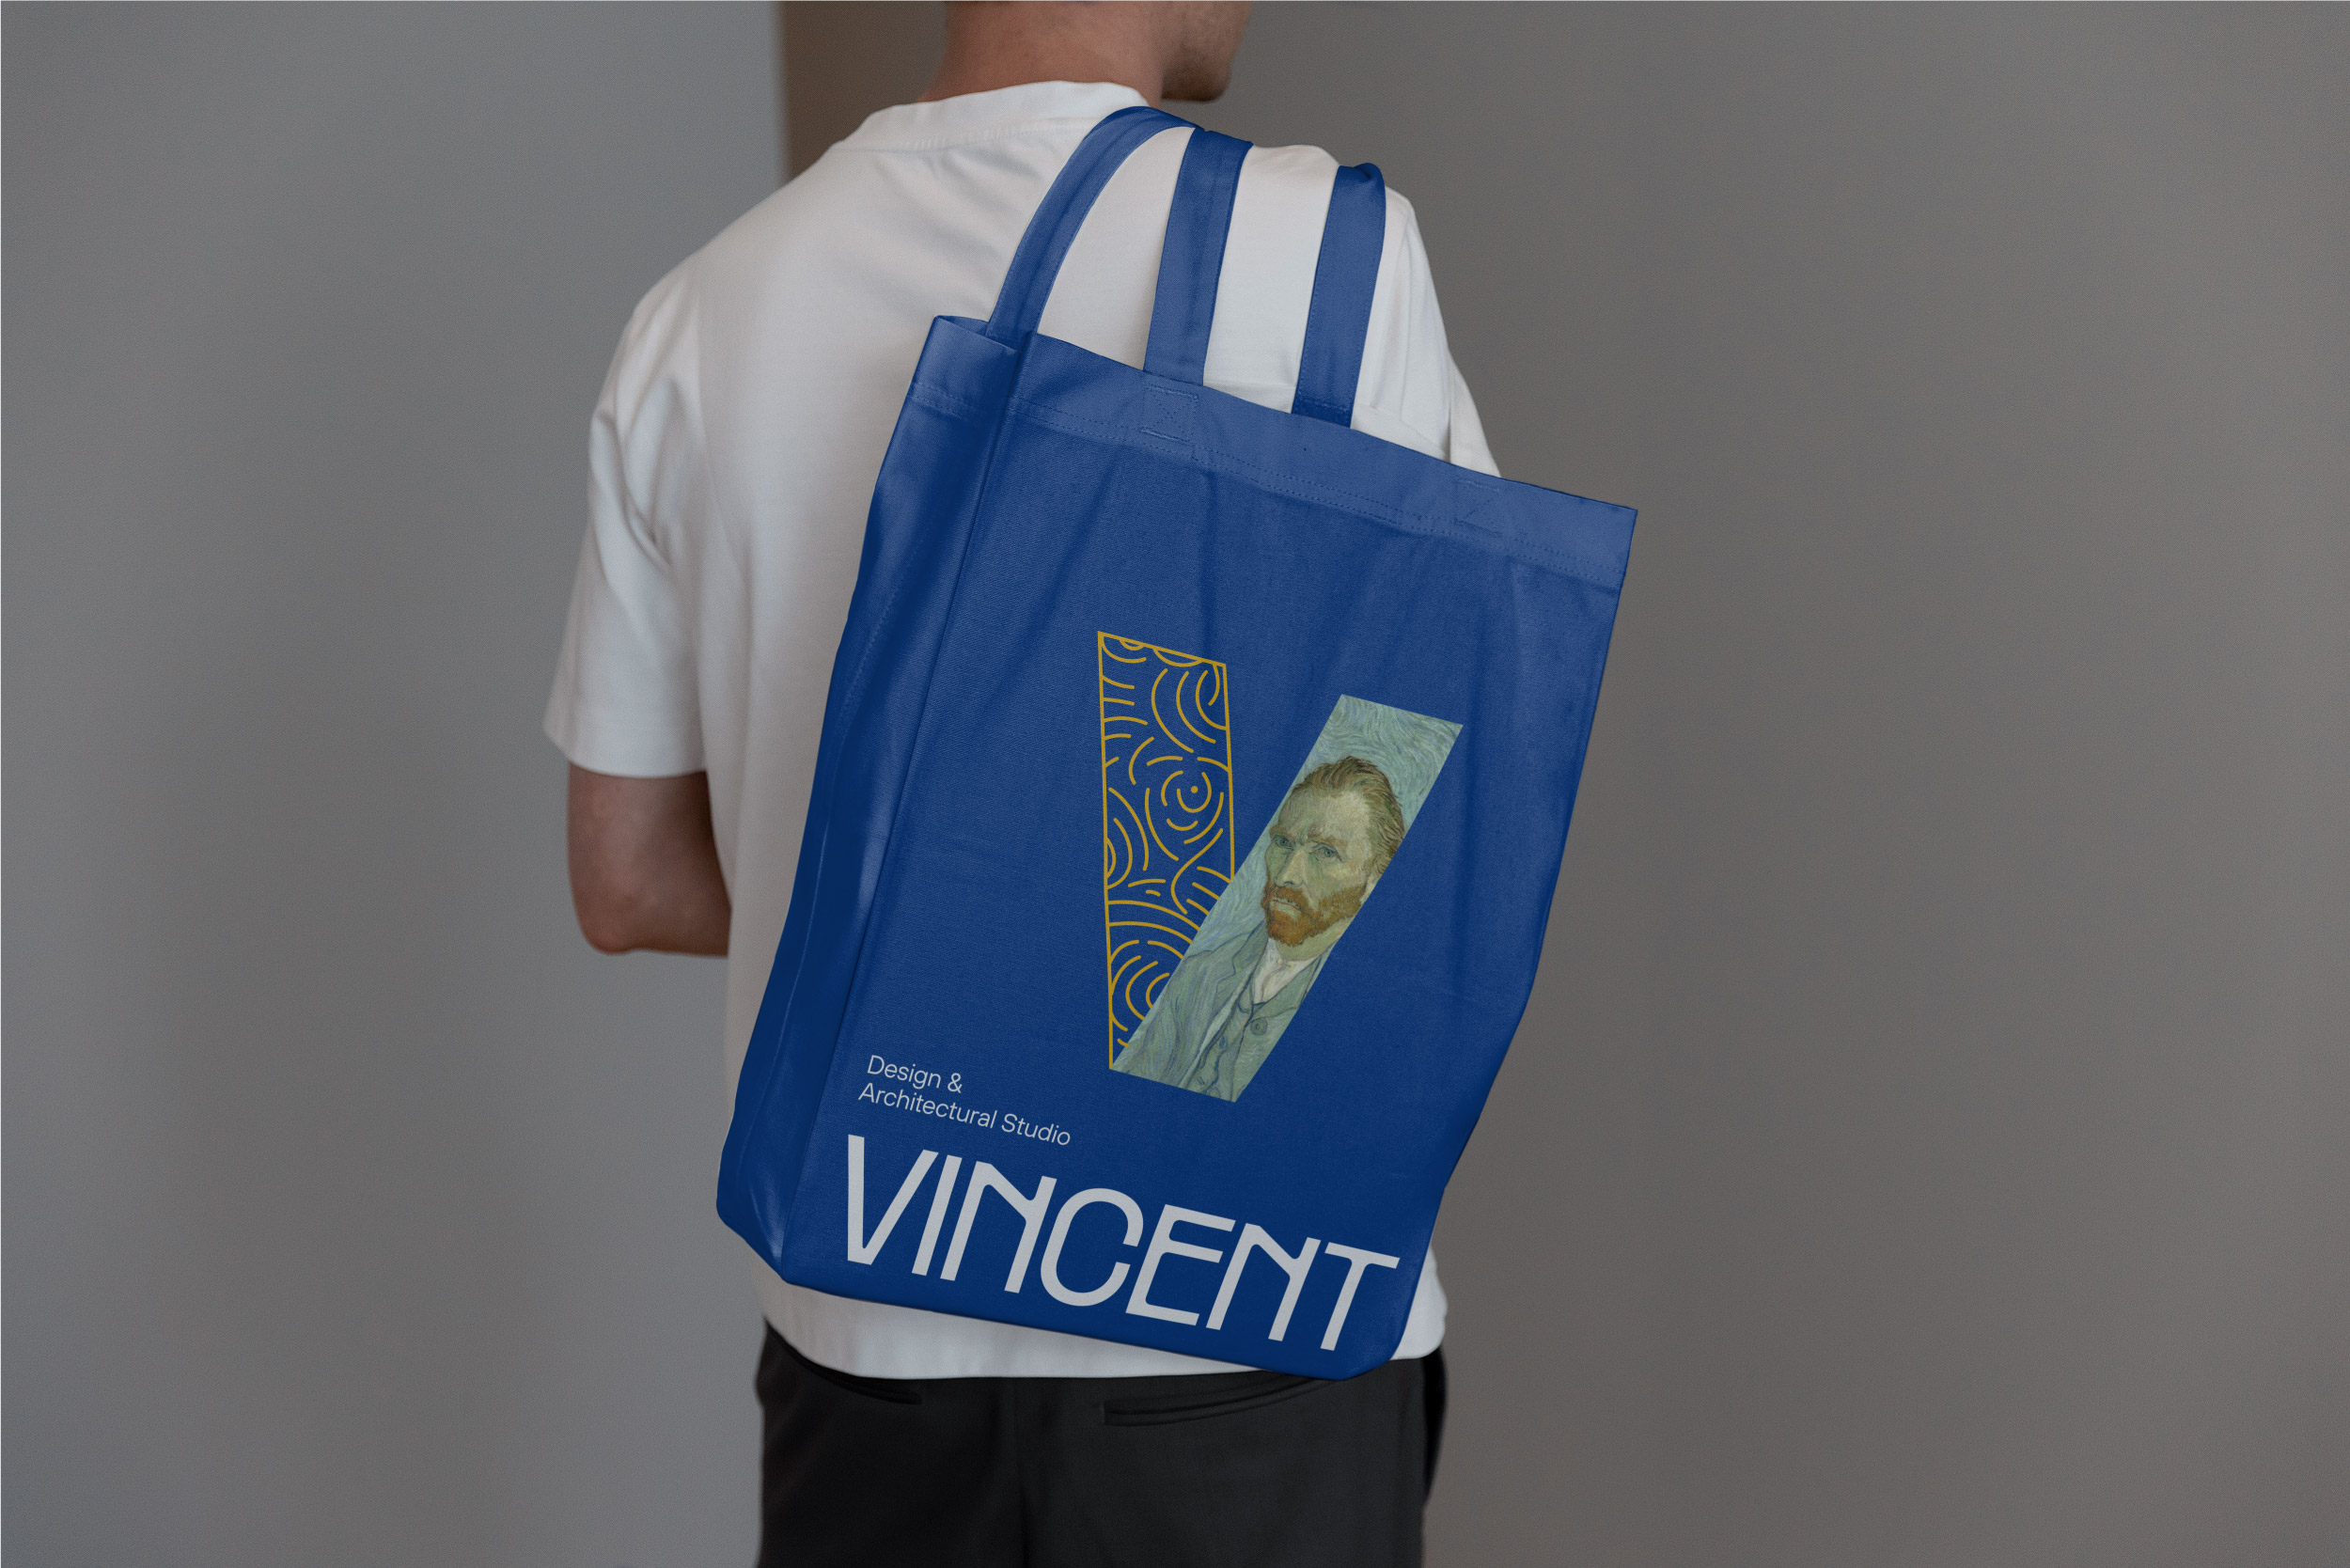 Vincent Design & Architectural Studio Brand Identity